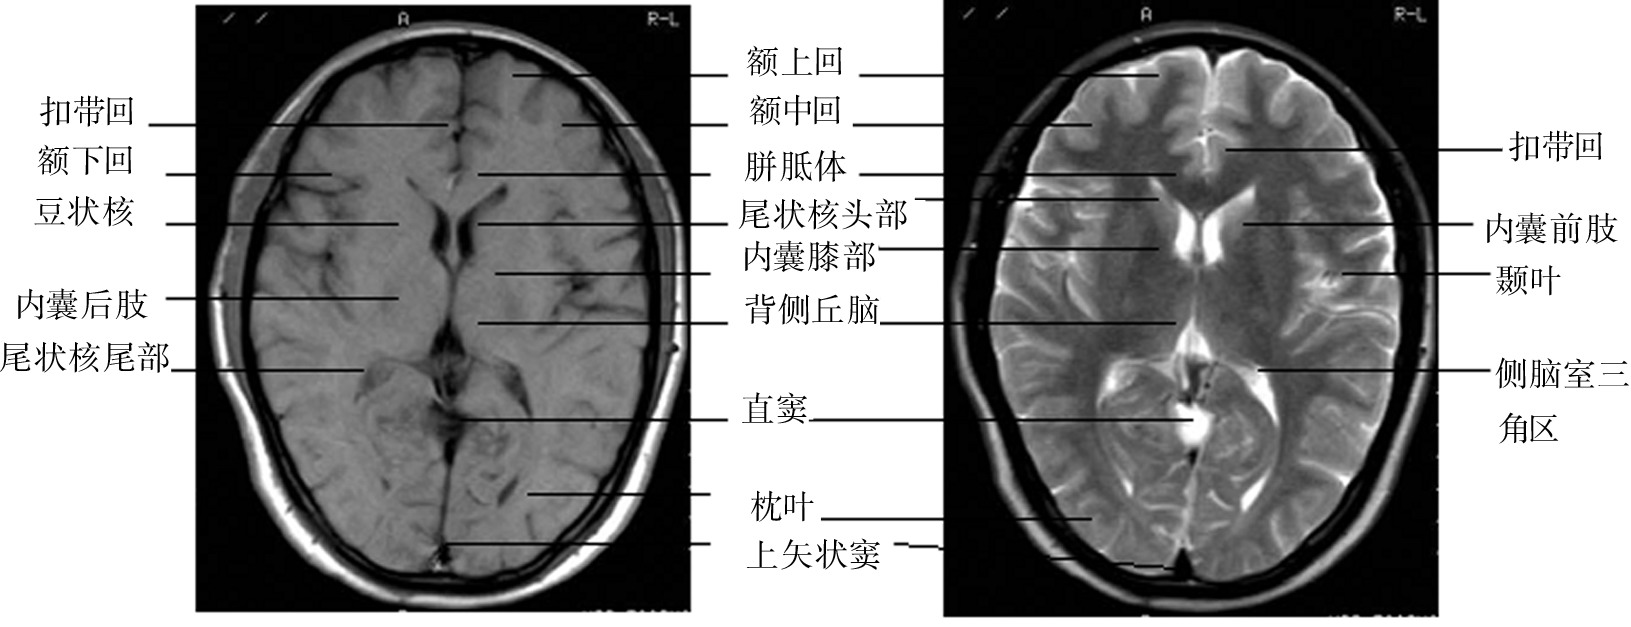 二、颅脑正常MRI解剖